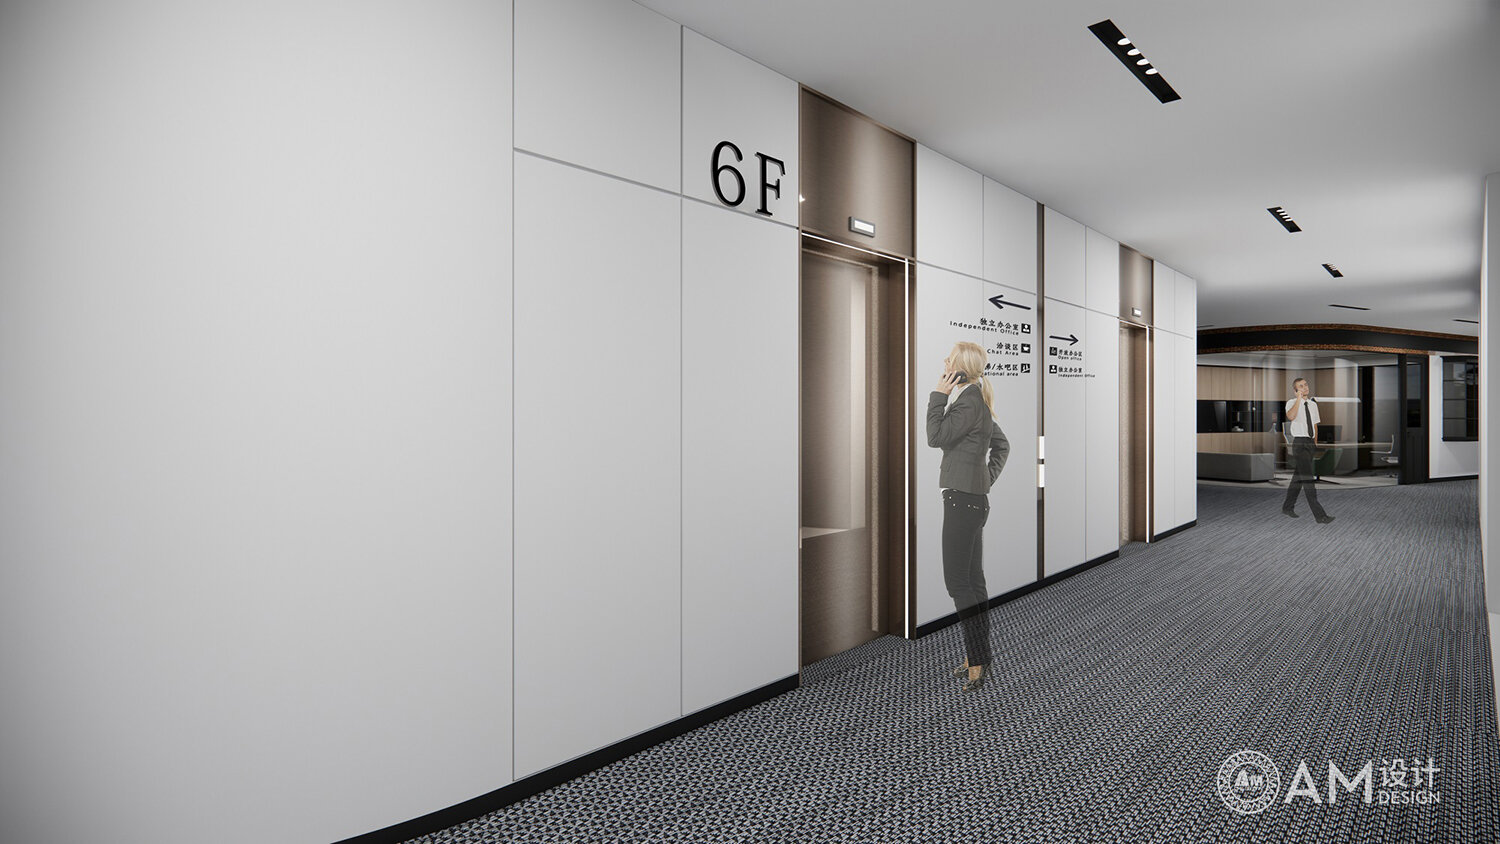 Elevator hall design